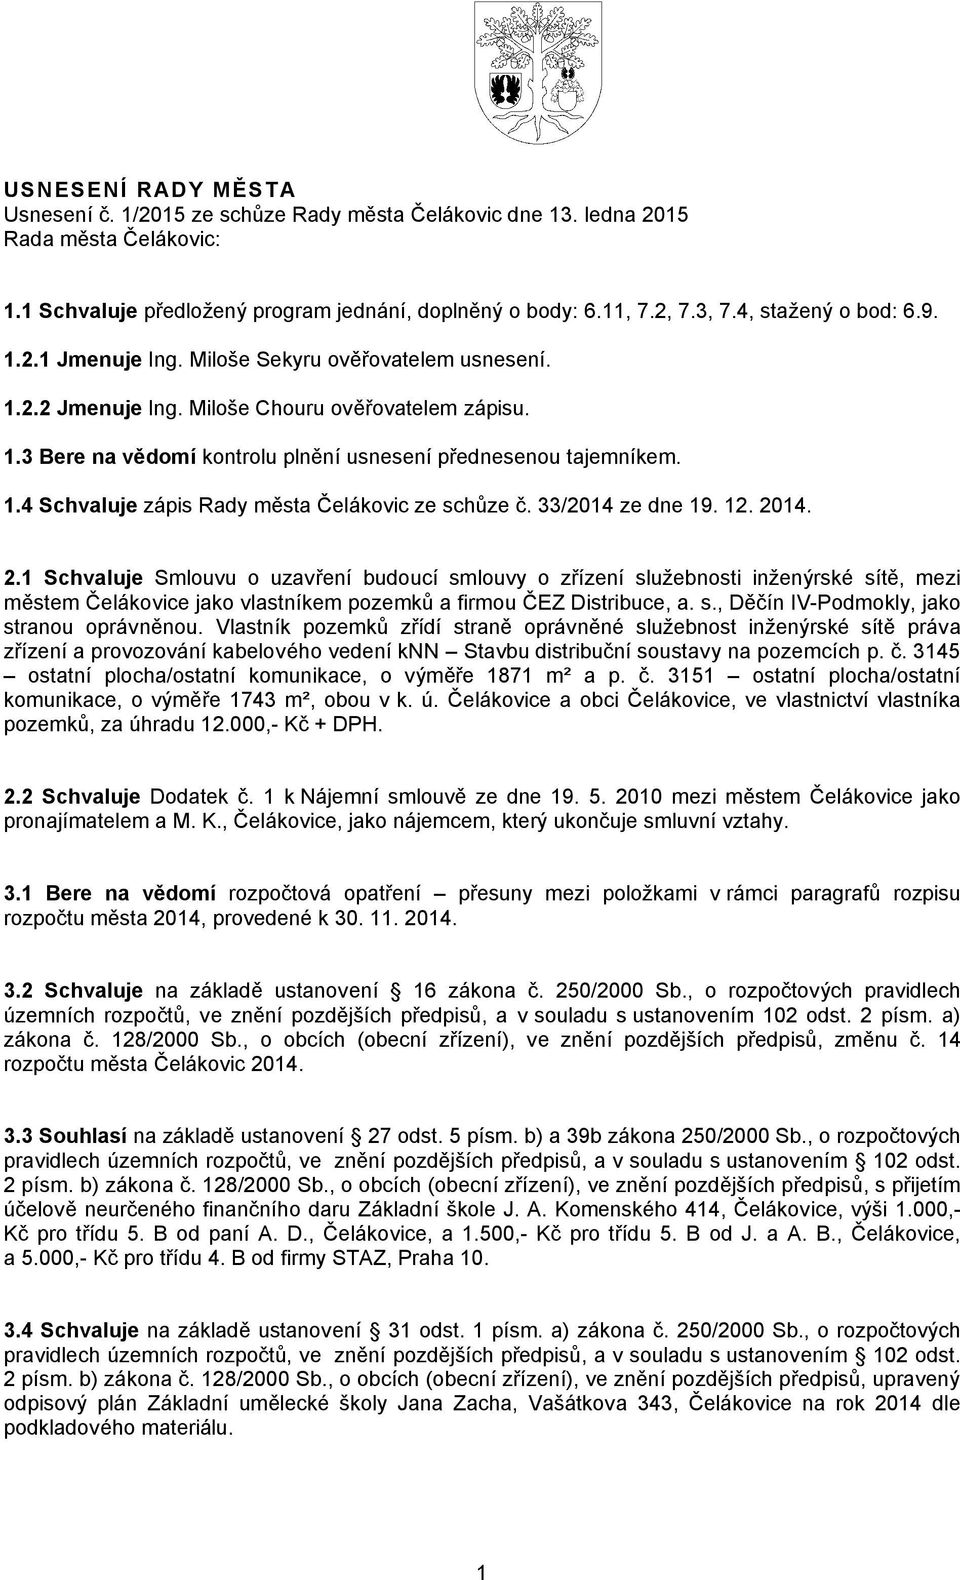 1.4 Schvaluje zápis Rady města Čelákovic ze schůze č. 33/2014 ze dne 19. 12. 20